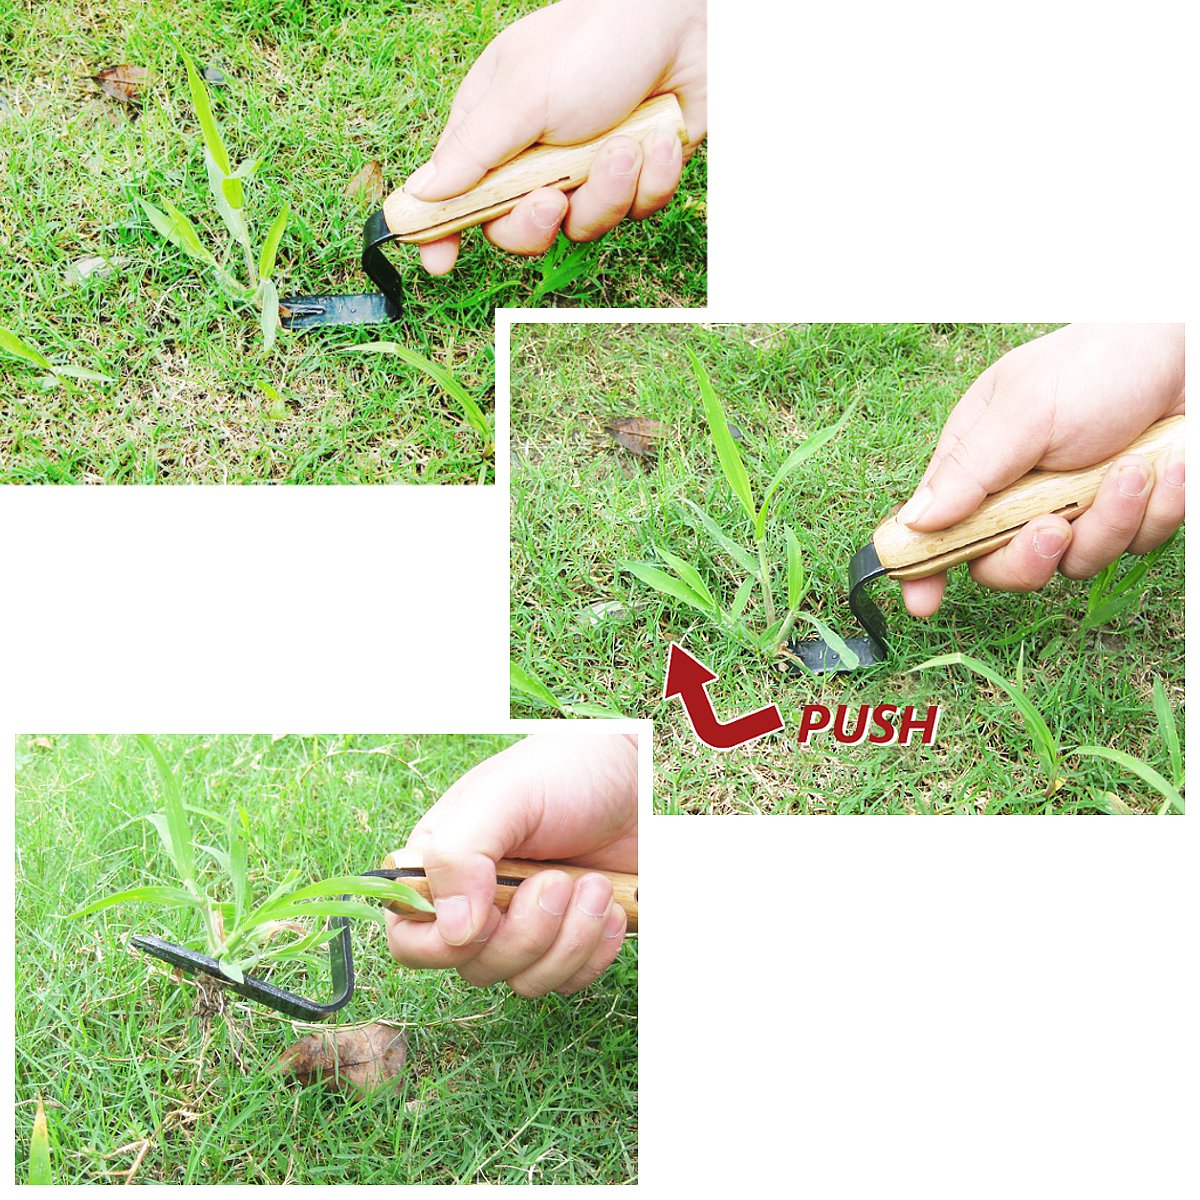 20cm-Forked-Head-Hand-Weeder-Puller-Patio-wood-handle-Garden-Remove-Weeds-1233517-2